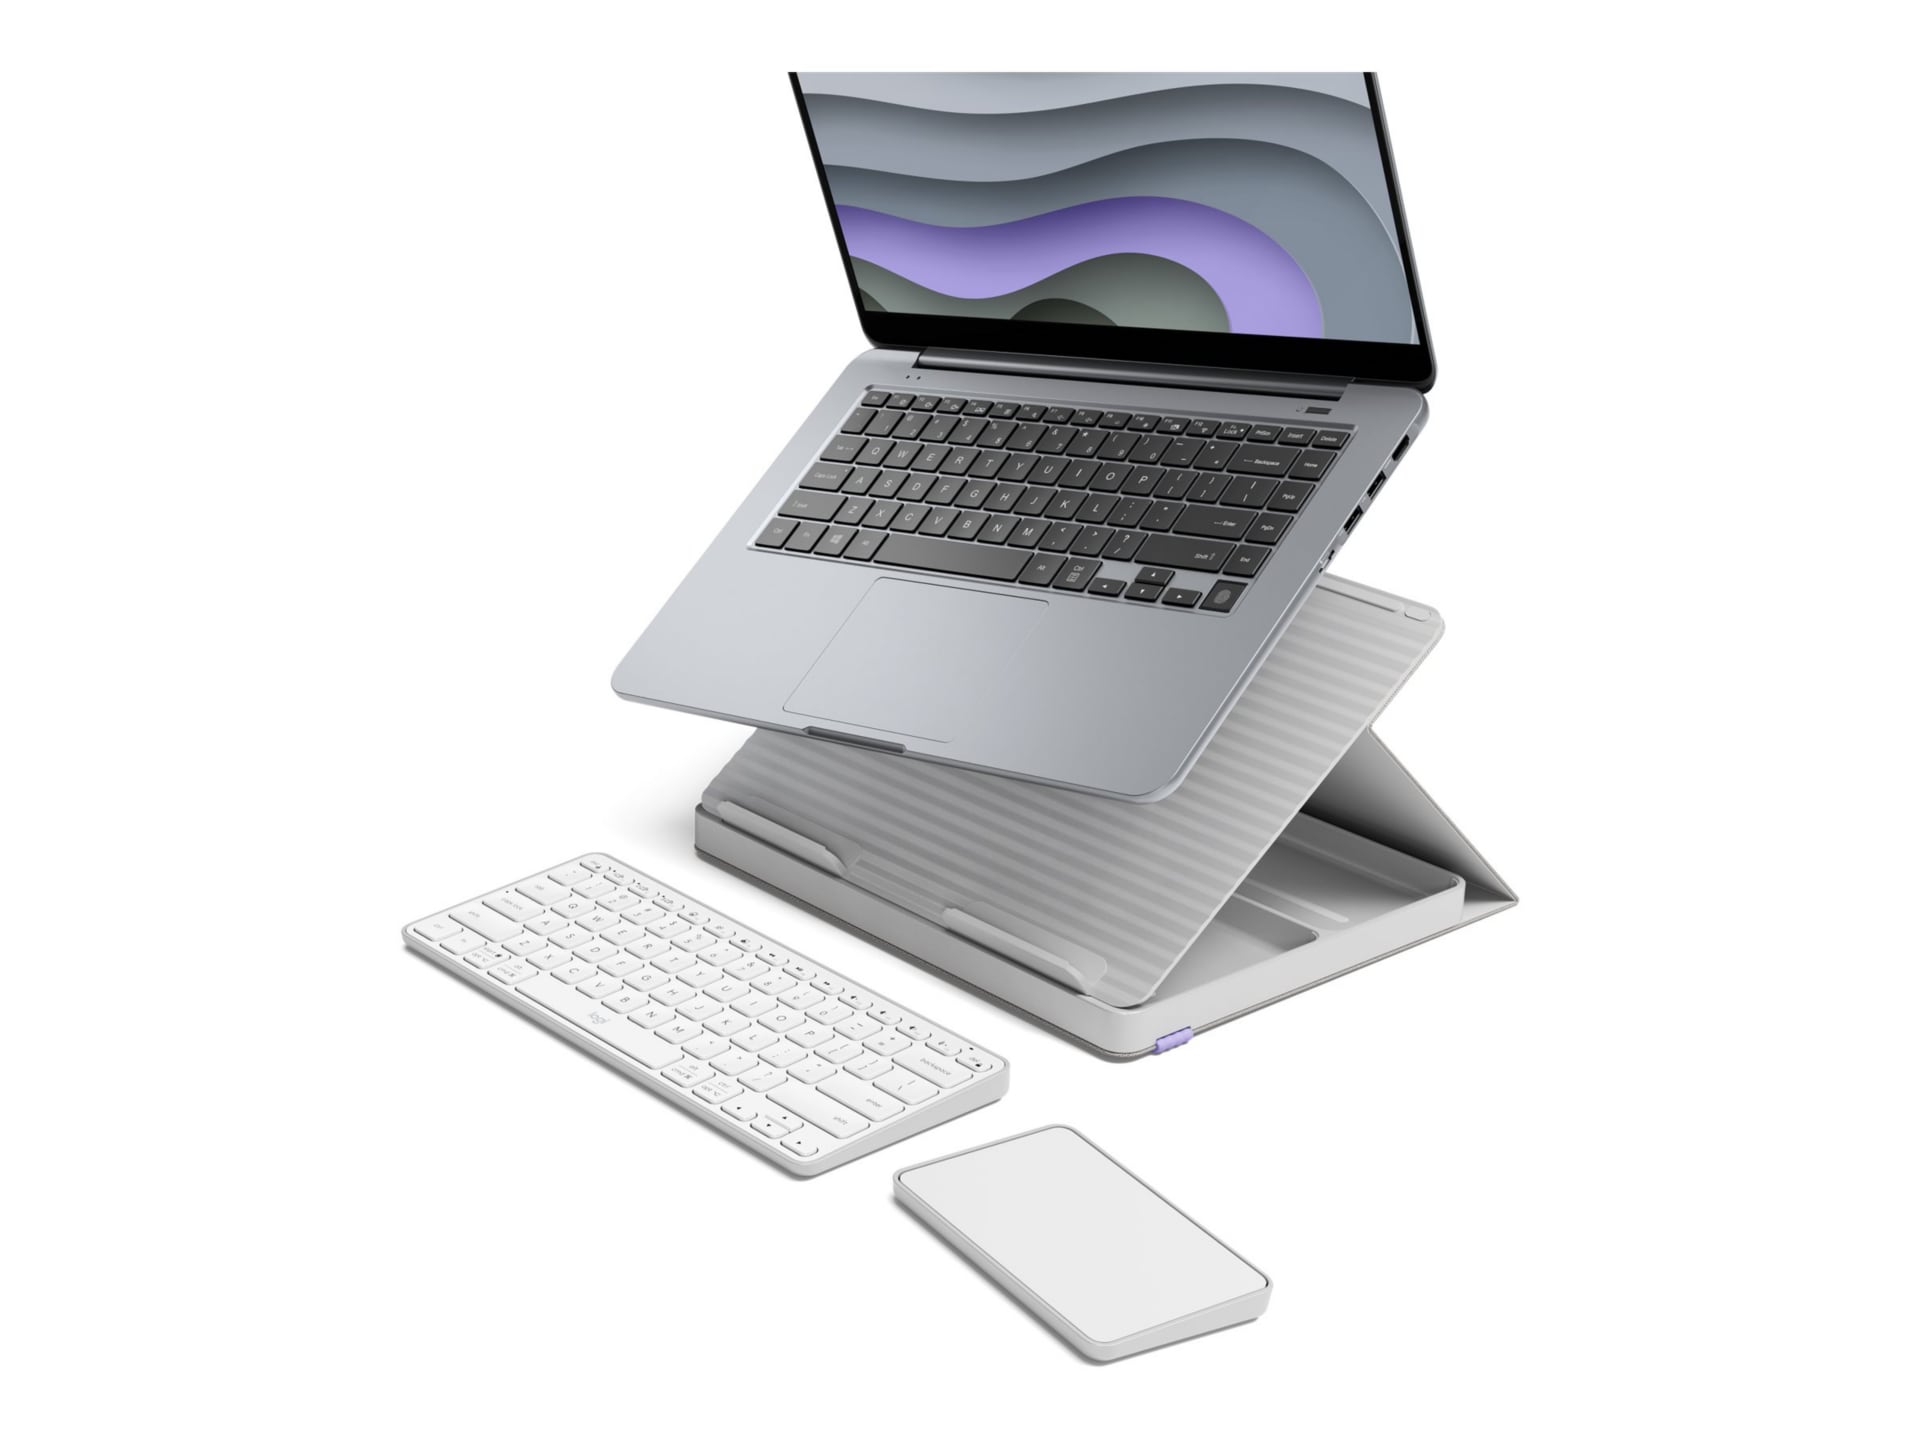 Logitech Casa Pop-Up Desk - keyboard and touchpad set - QWERTY - English -